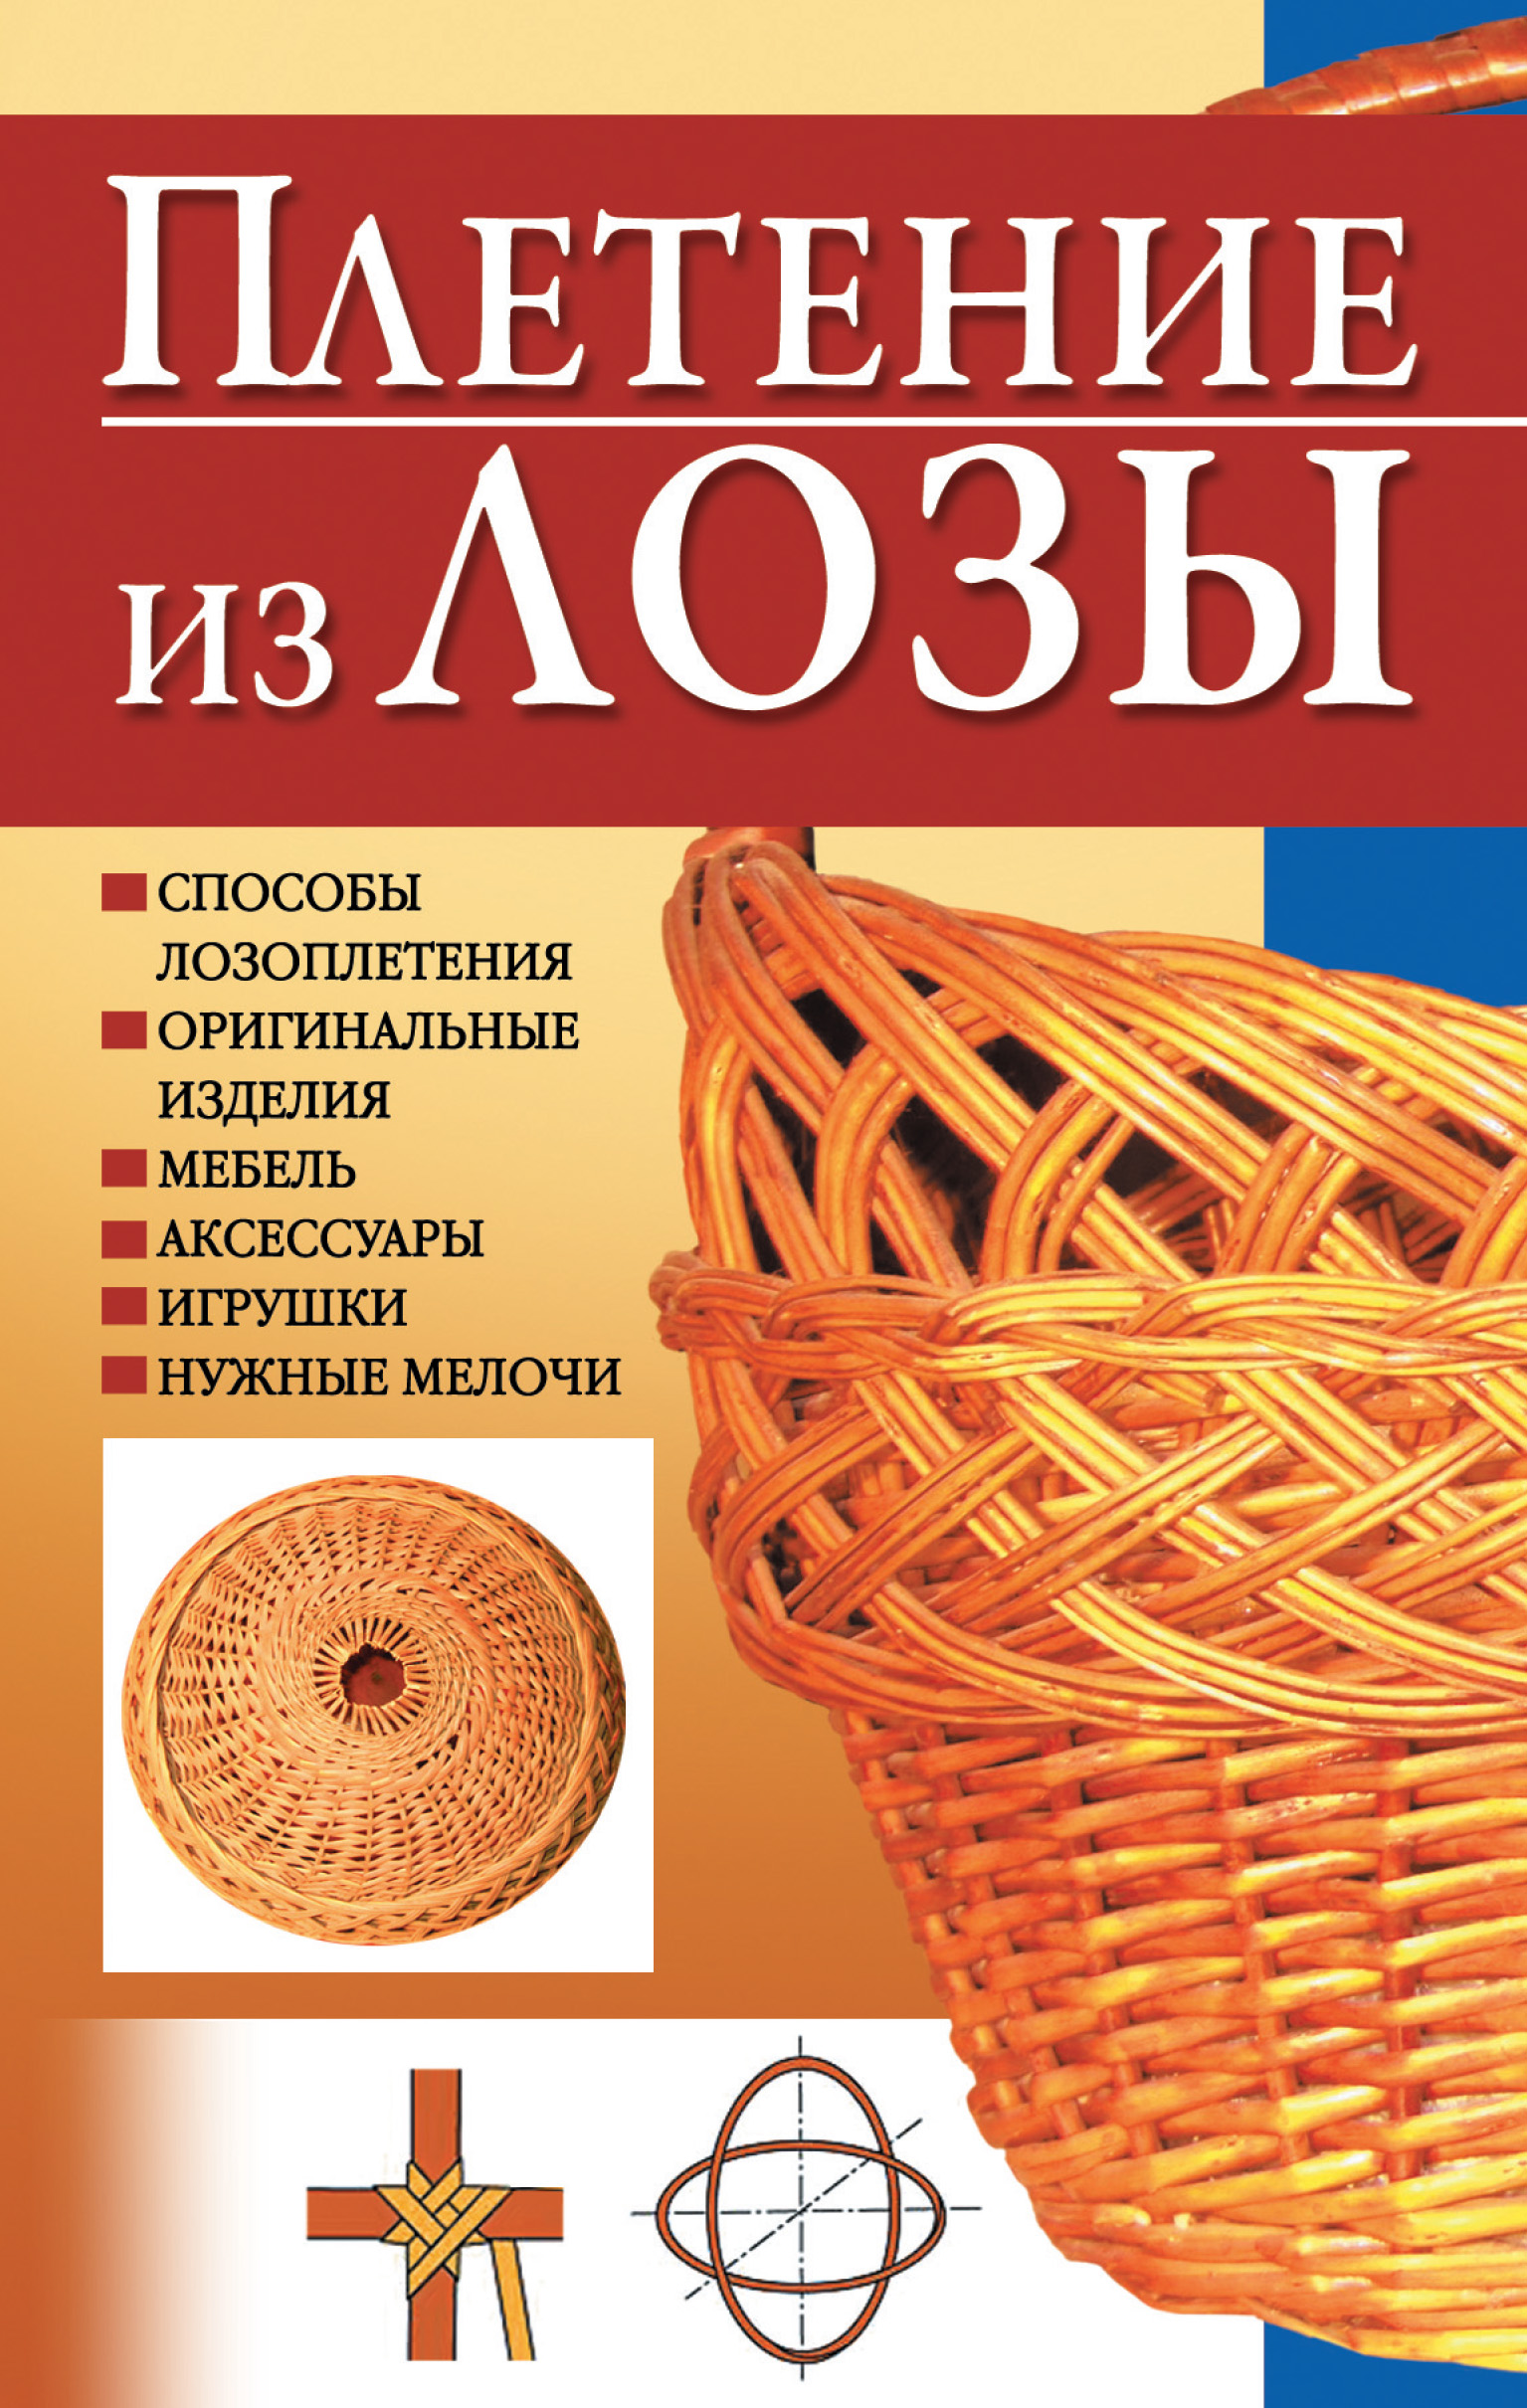 Рукоделие для дома своими руками: 32 самых интересных вида — webmaster-korolev.ru